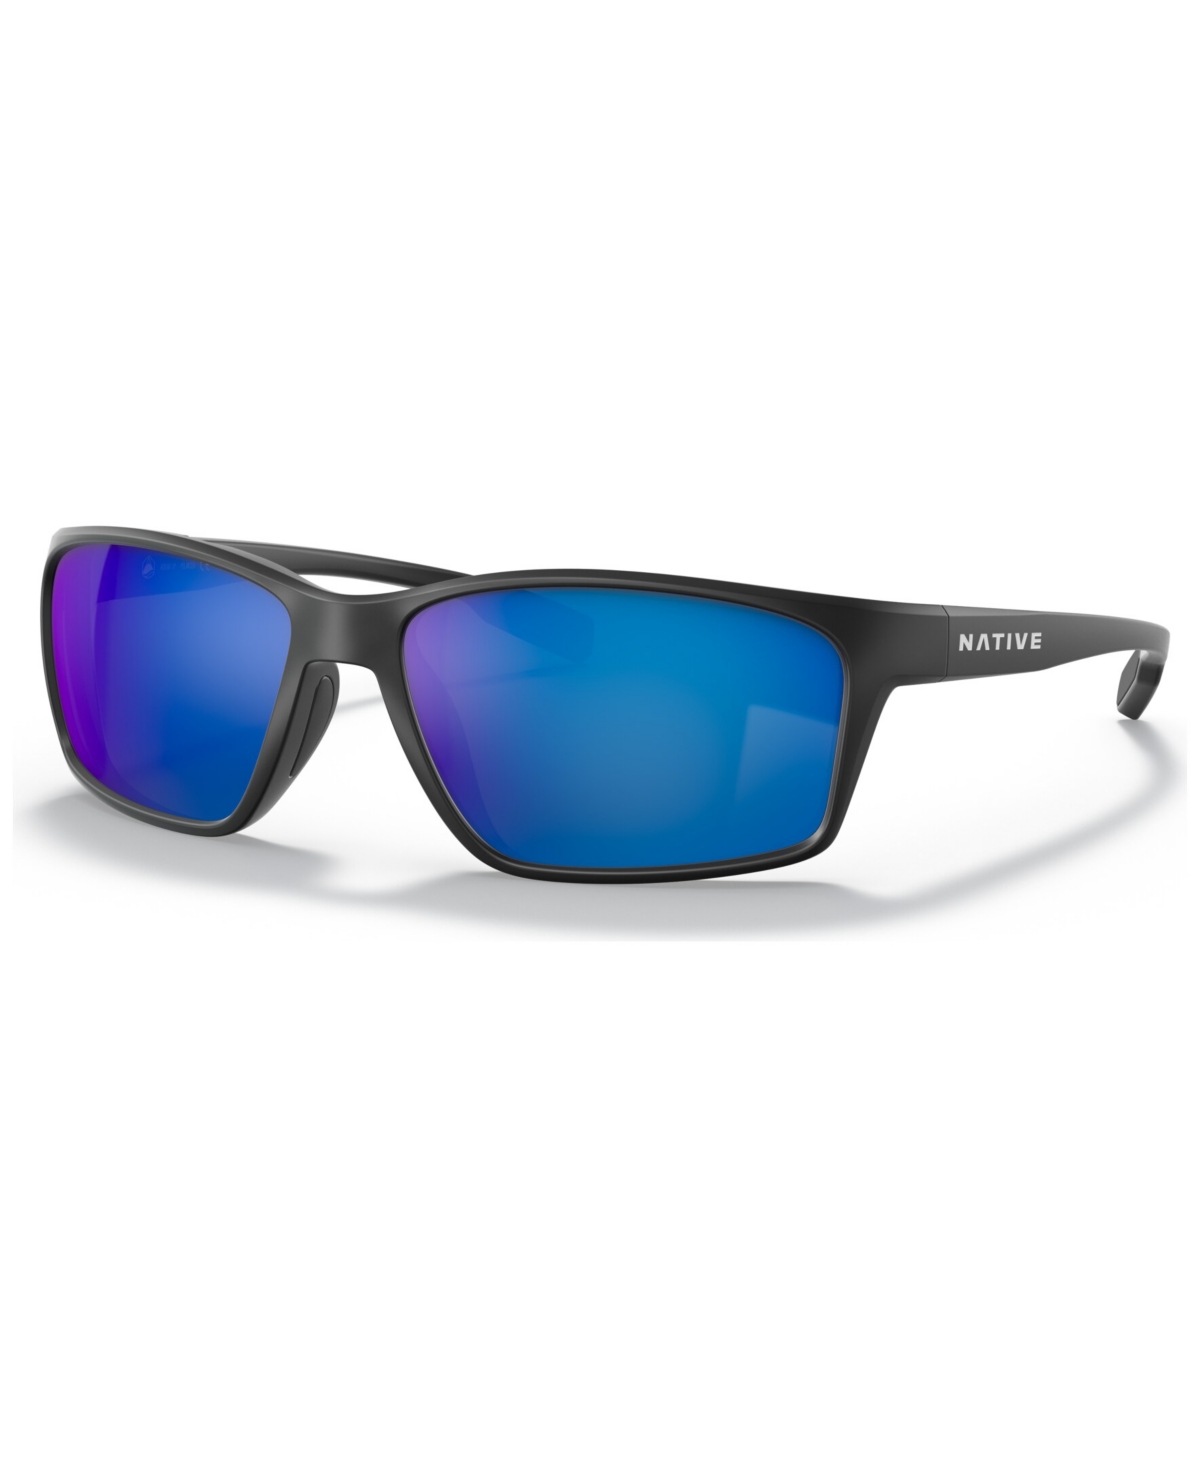 Men's Kodiak Xp 60 Polarized Sunglasses, XD903760-p - Matte Black, Blue